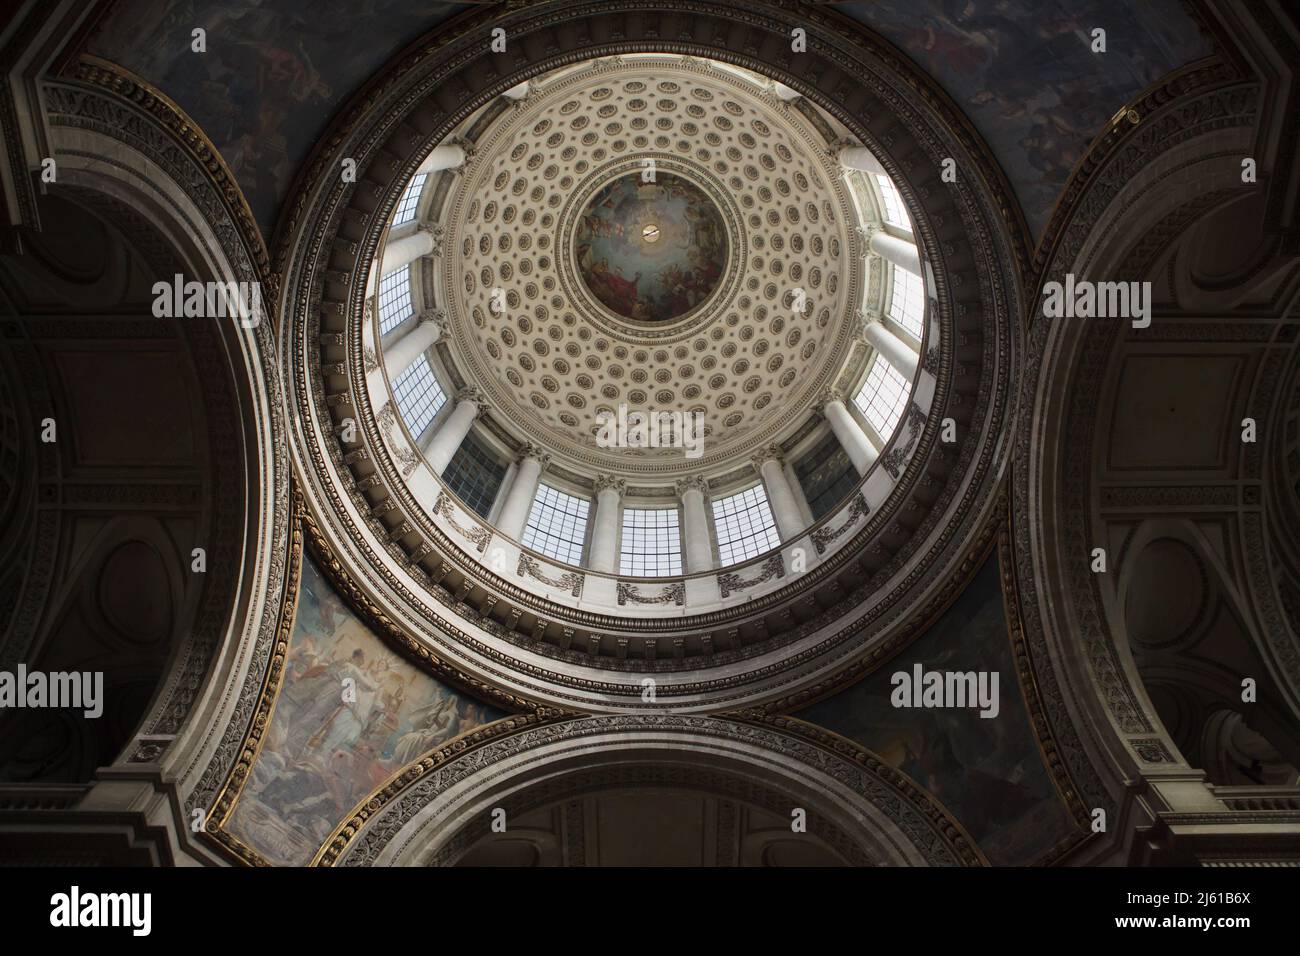 Interno della cupola principale del Panthéon progettato dall'architetto francese Jacques-Germain Soufflot (1758-1790) a Parigi, Francia. L'Apoteosi di San Genevieve raffigurata nell'affresco dal pittore francese Antoine-Jean Gros (1811-1834) si trova al centro della cupola. Foto Stock